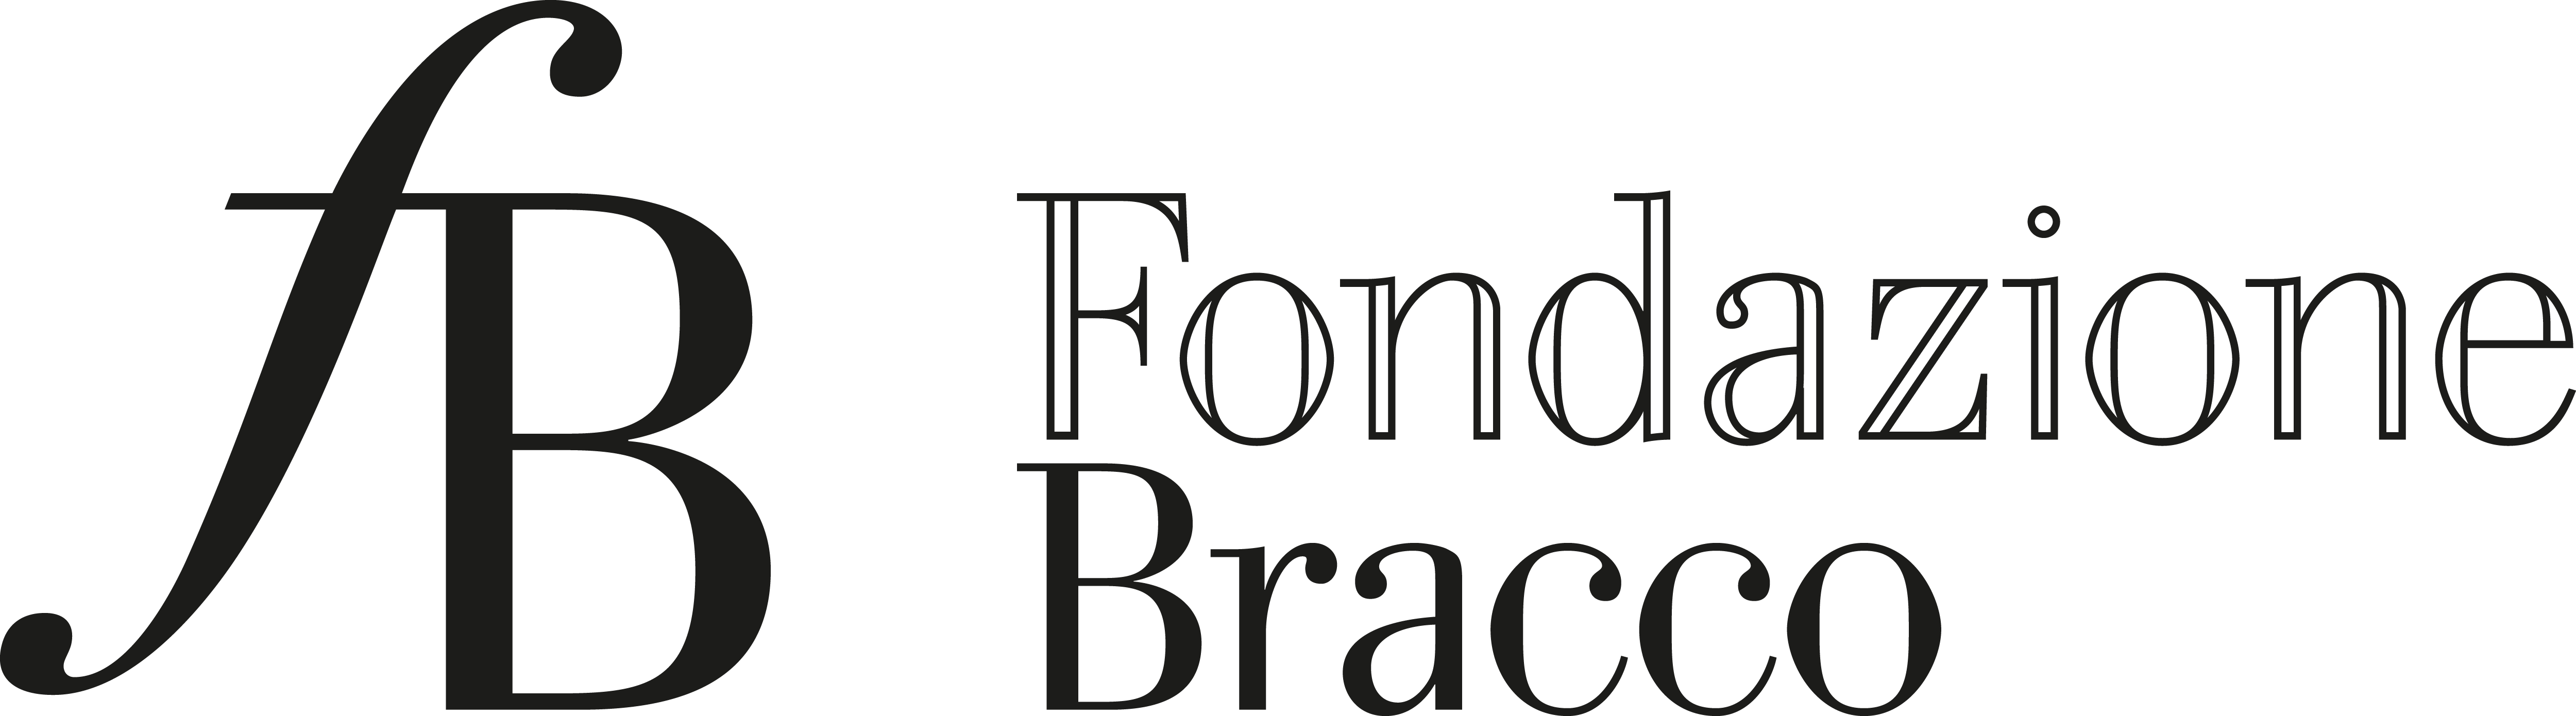 logo_fb_footer